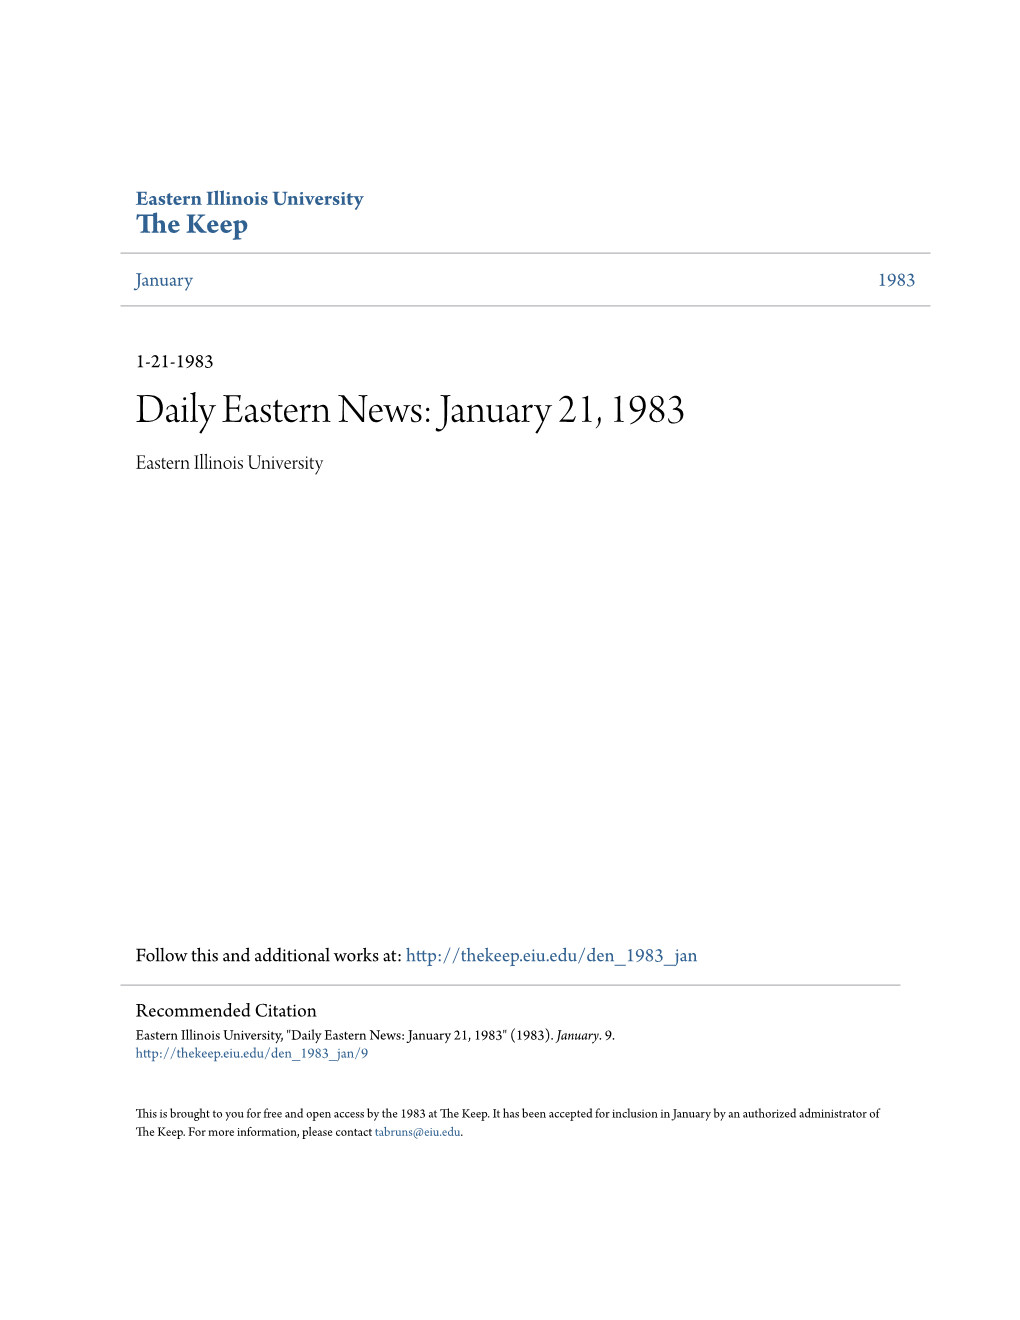 Eastern News: January 21, 1983 Eastern Illinois University